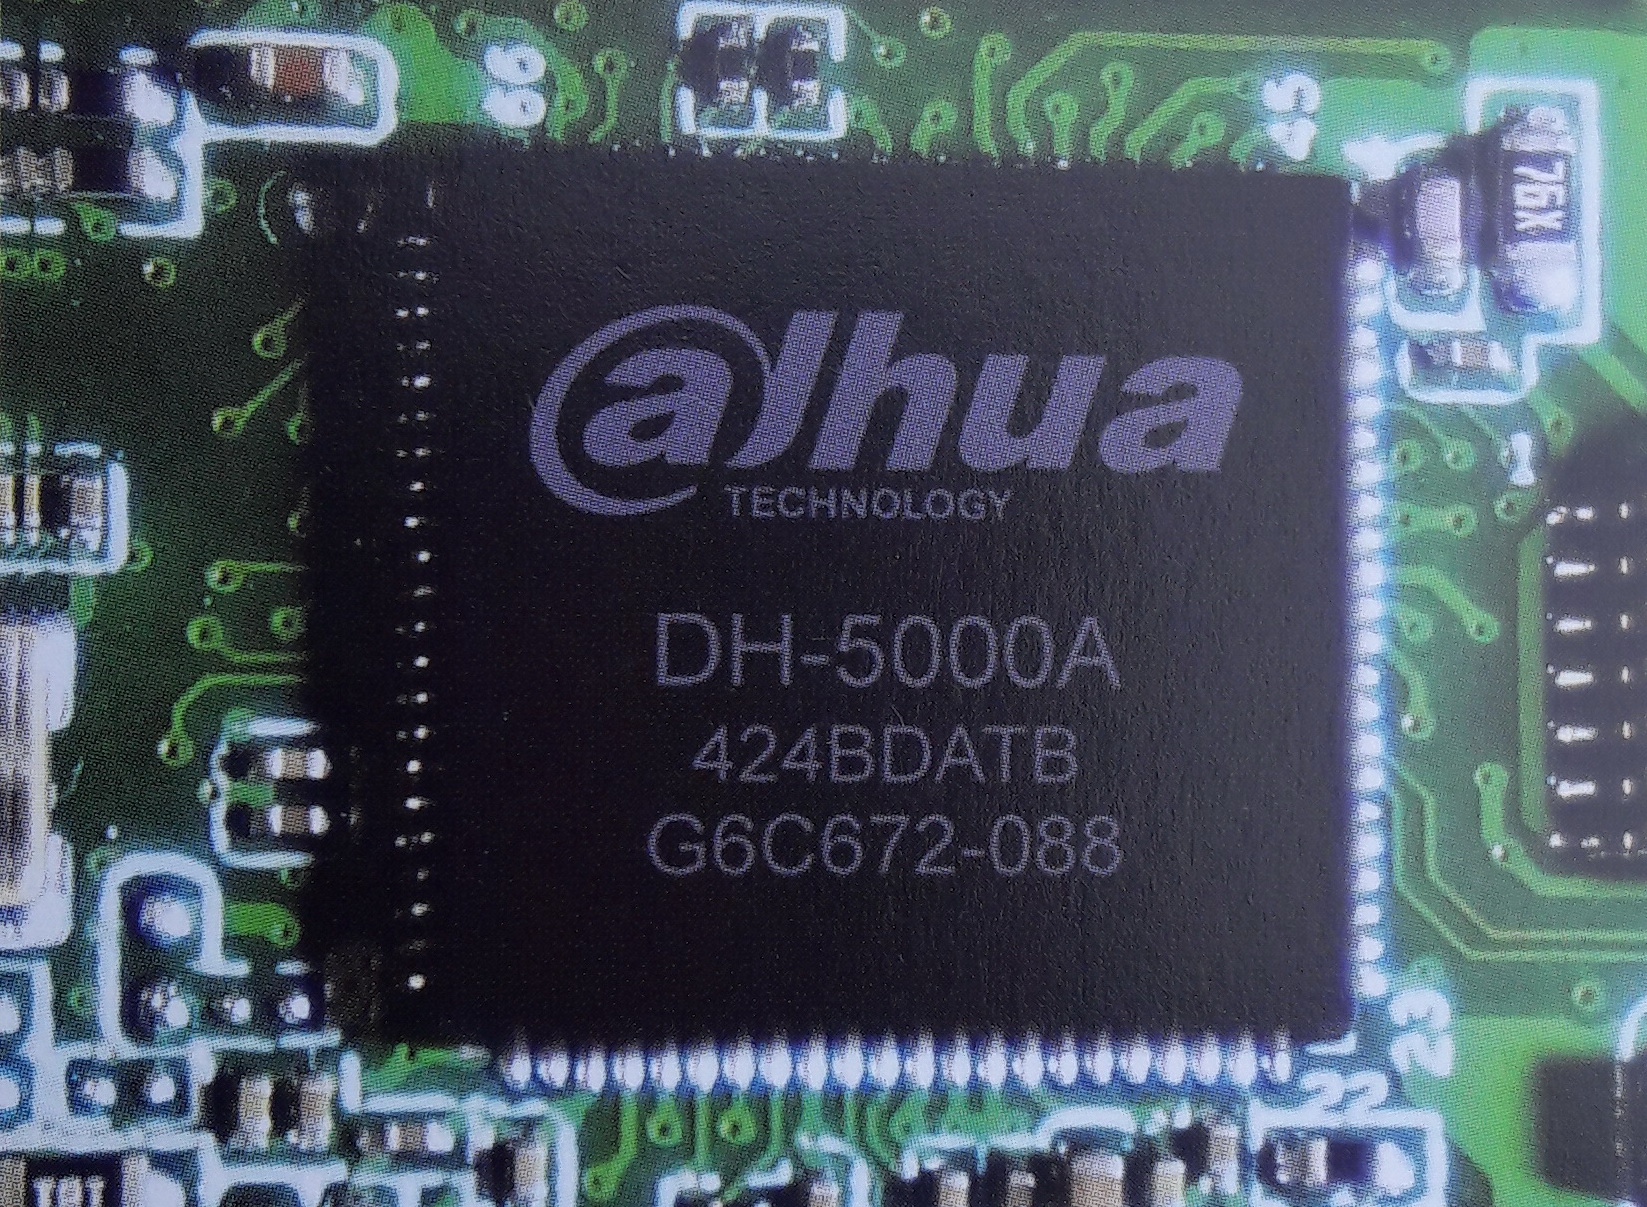 Dahua DH 5000A HDCVi chip